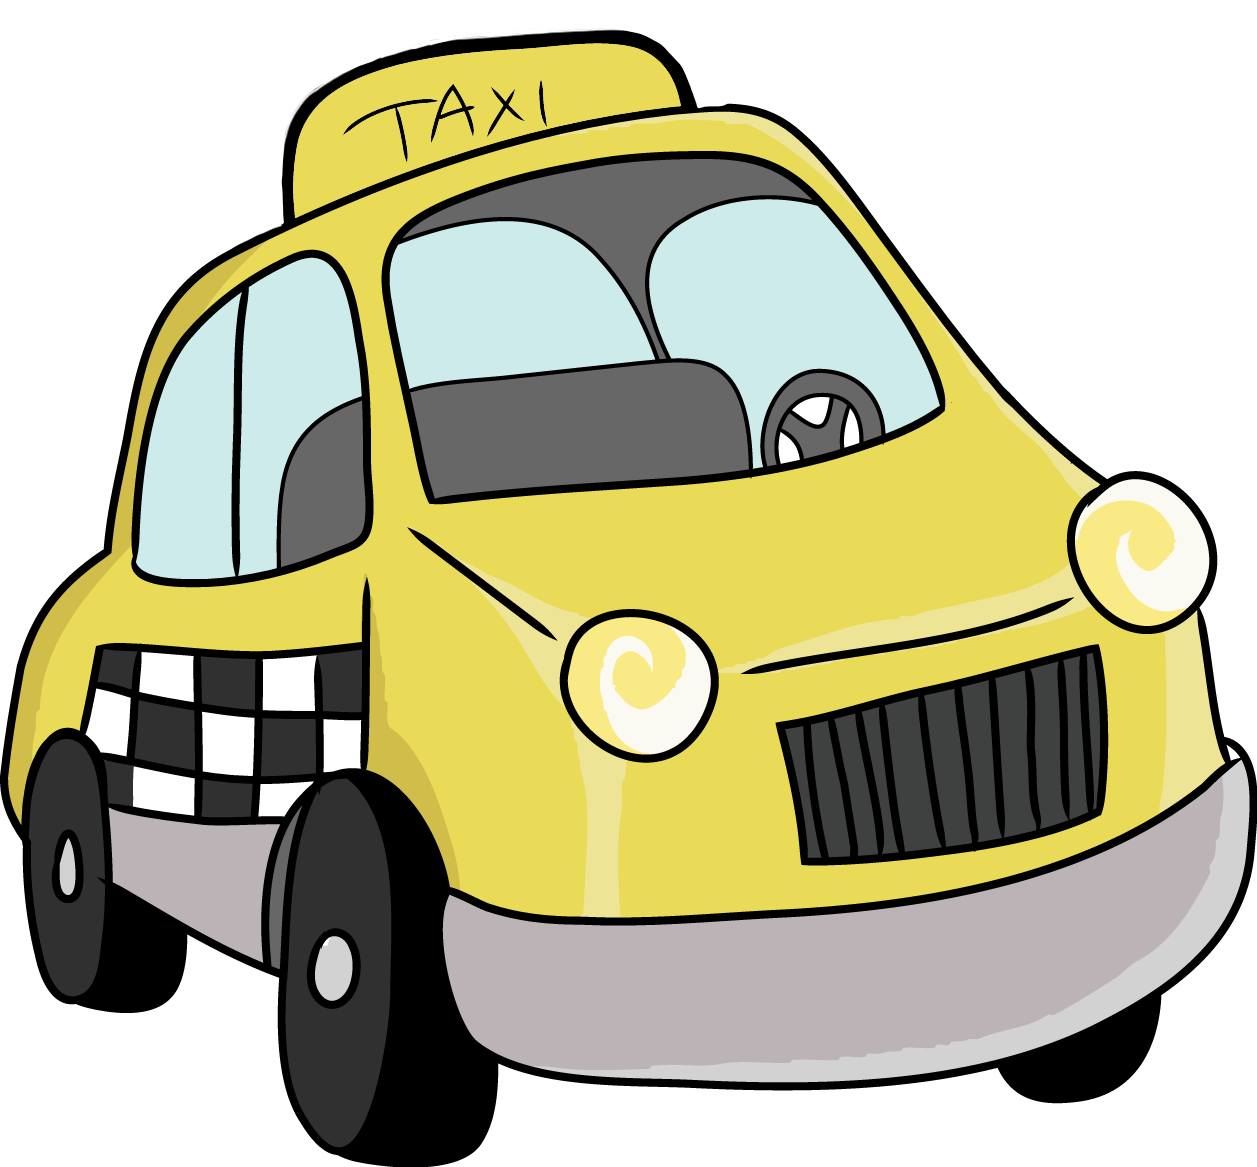 Taxi Cab Clipart-Clipartlook.com-1257